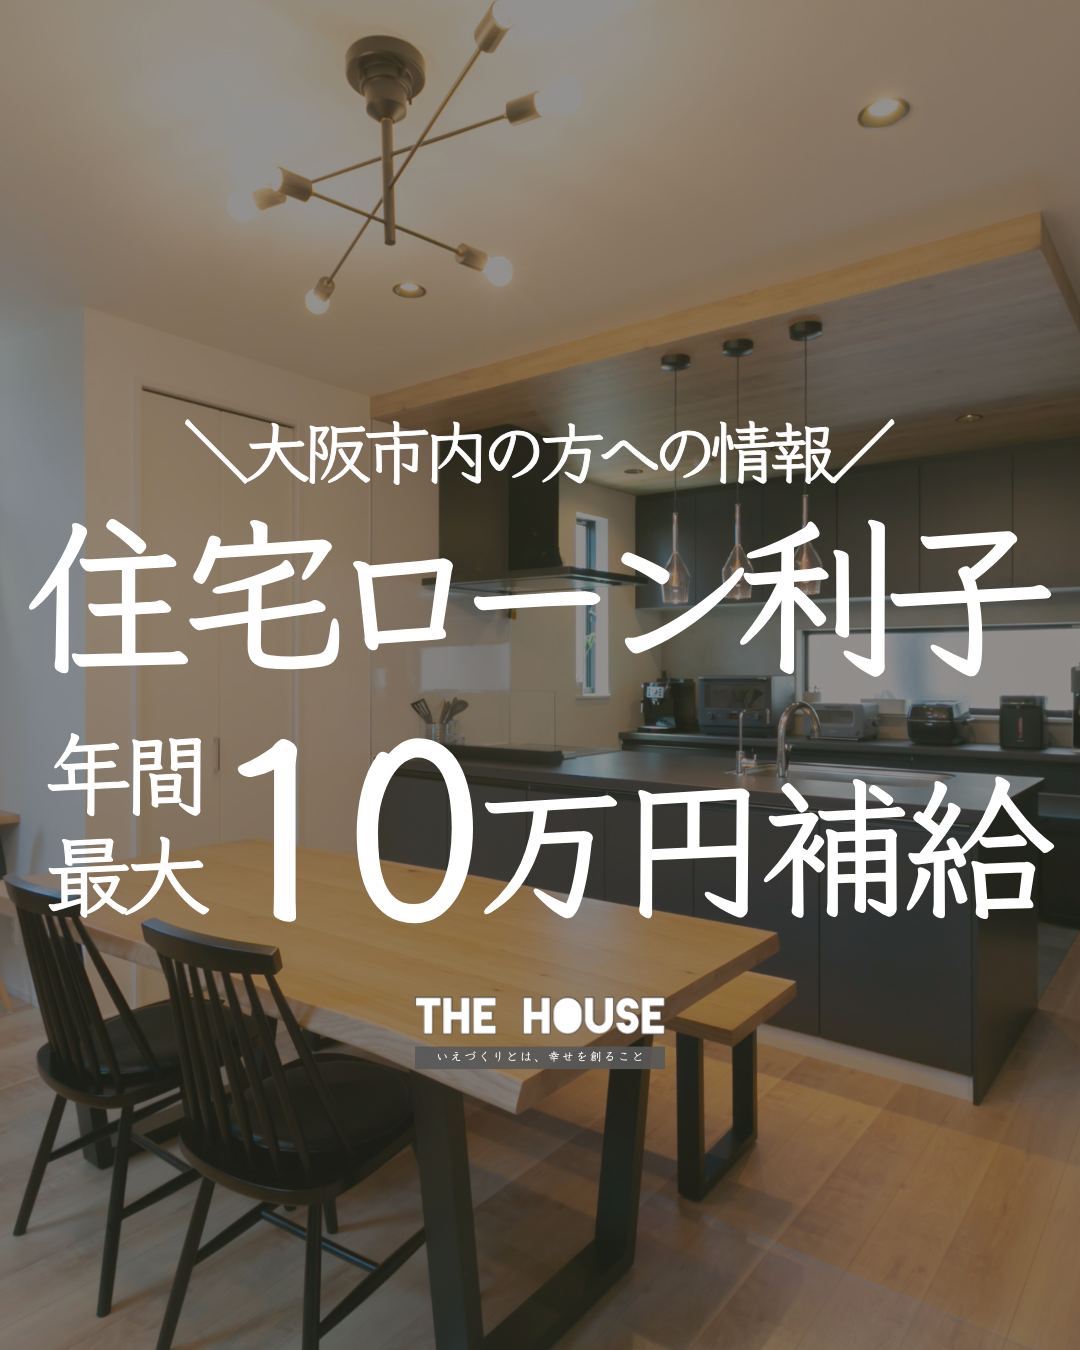 【大阪市内の方への情報】住宅ローン利子 年間最大10万円補給